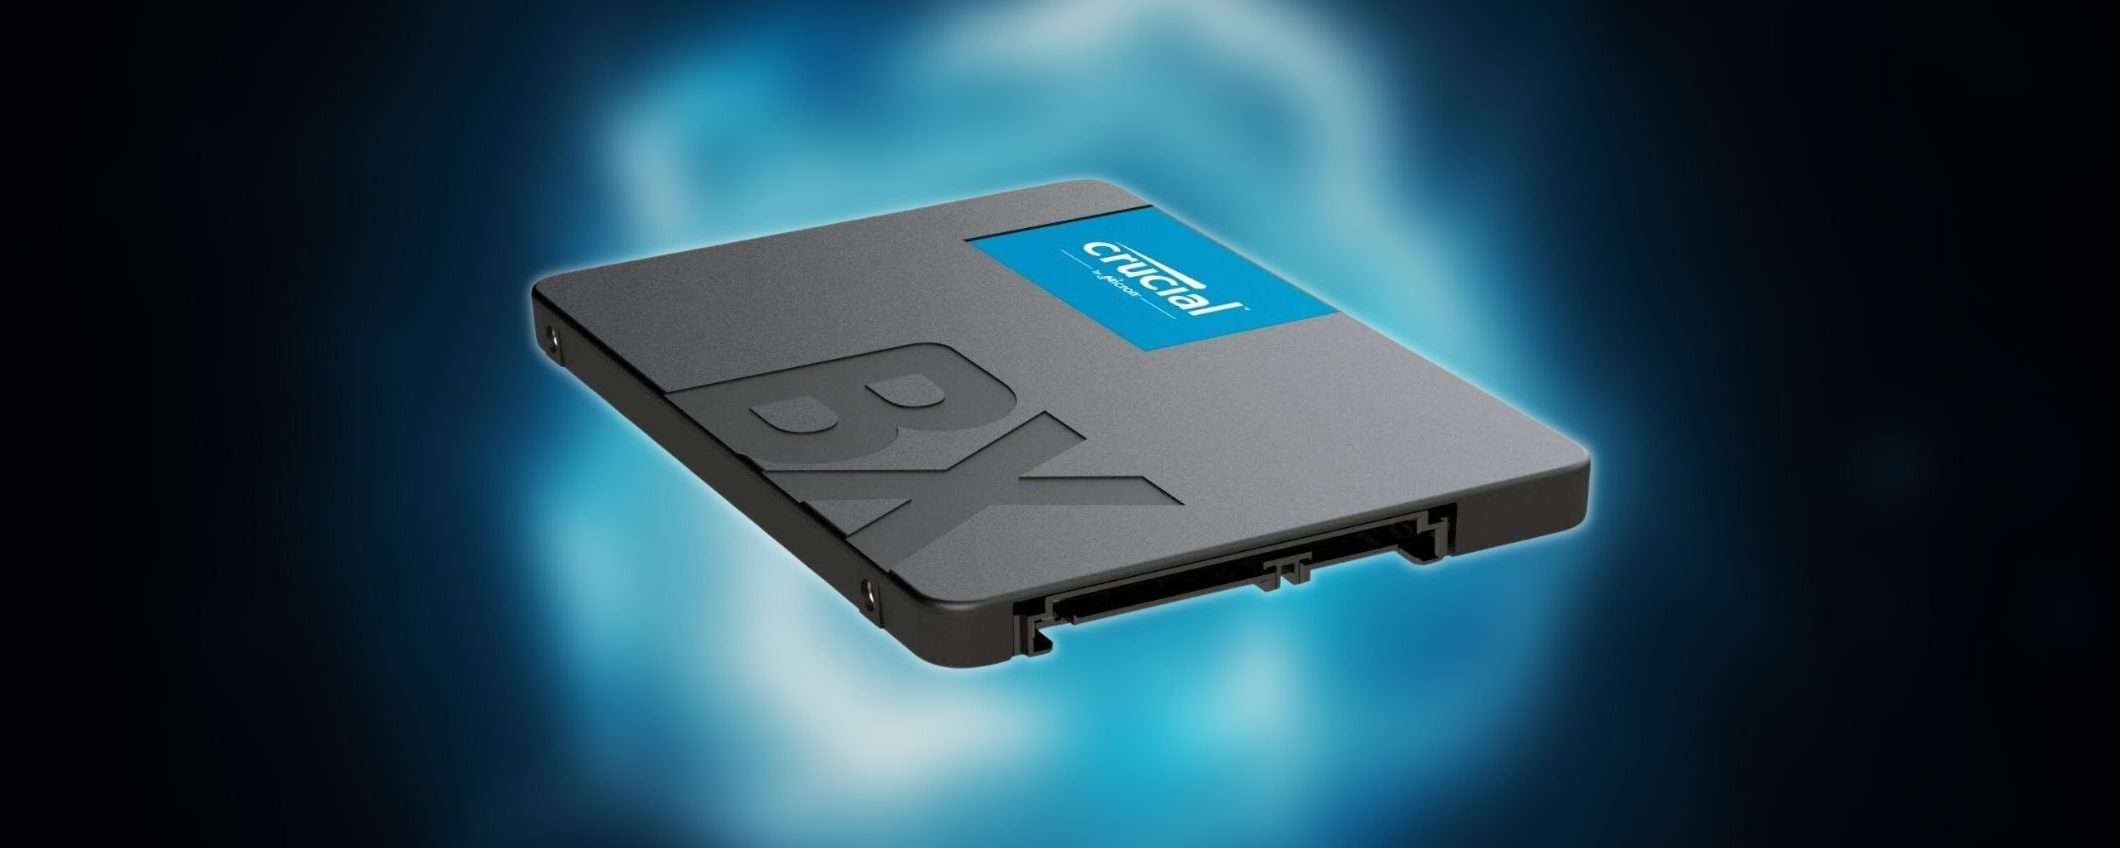 Ti bastano 20 euro per questo velocissimo SSD da 240GB